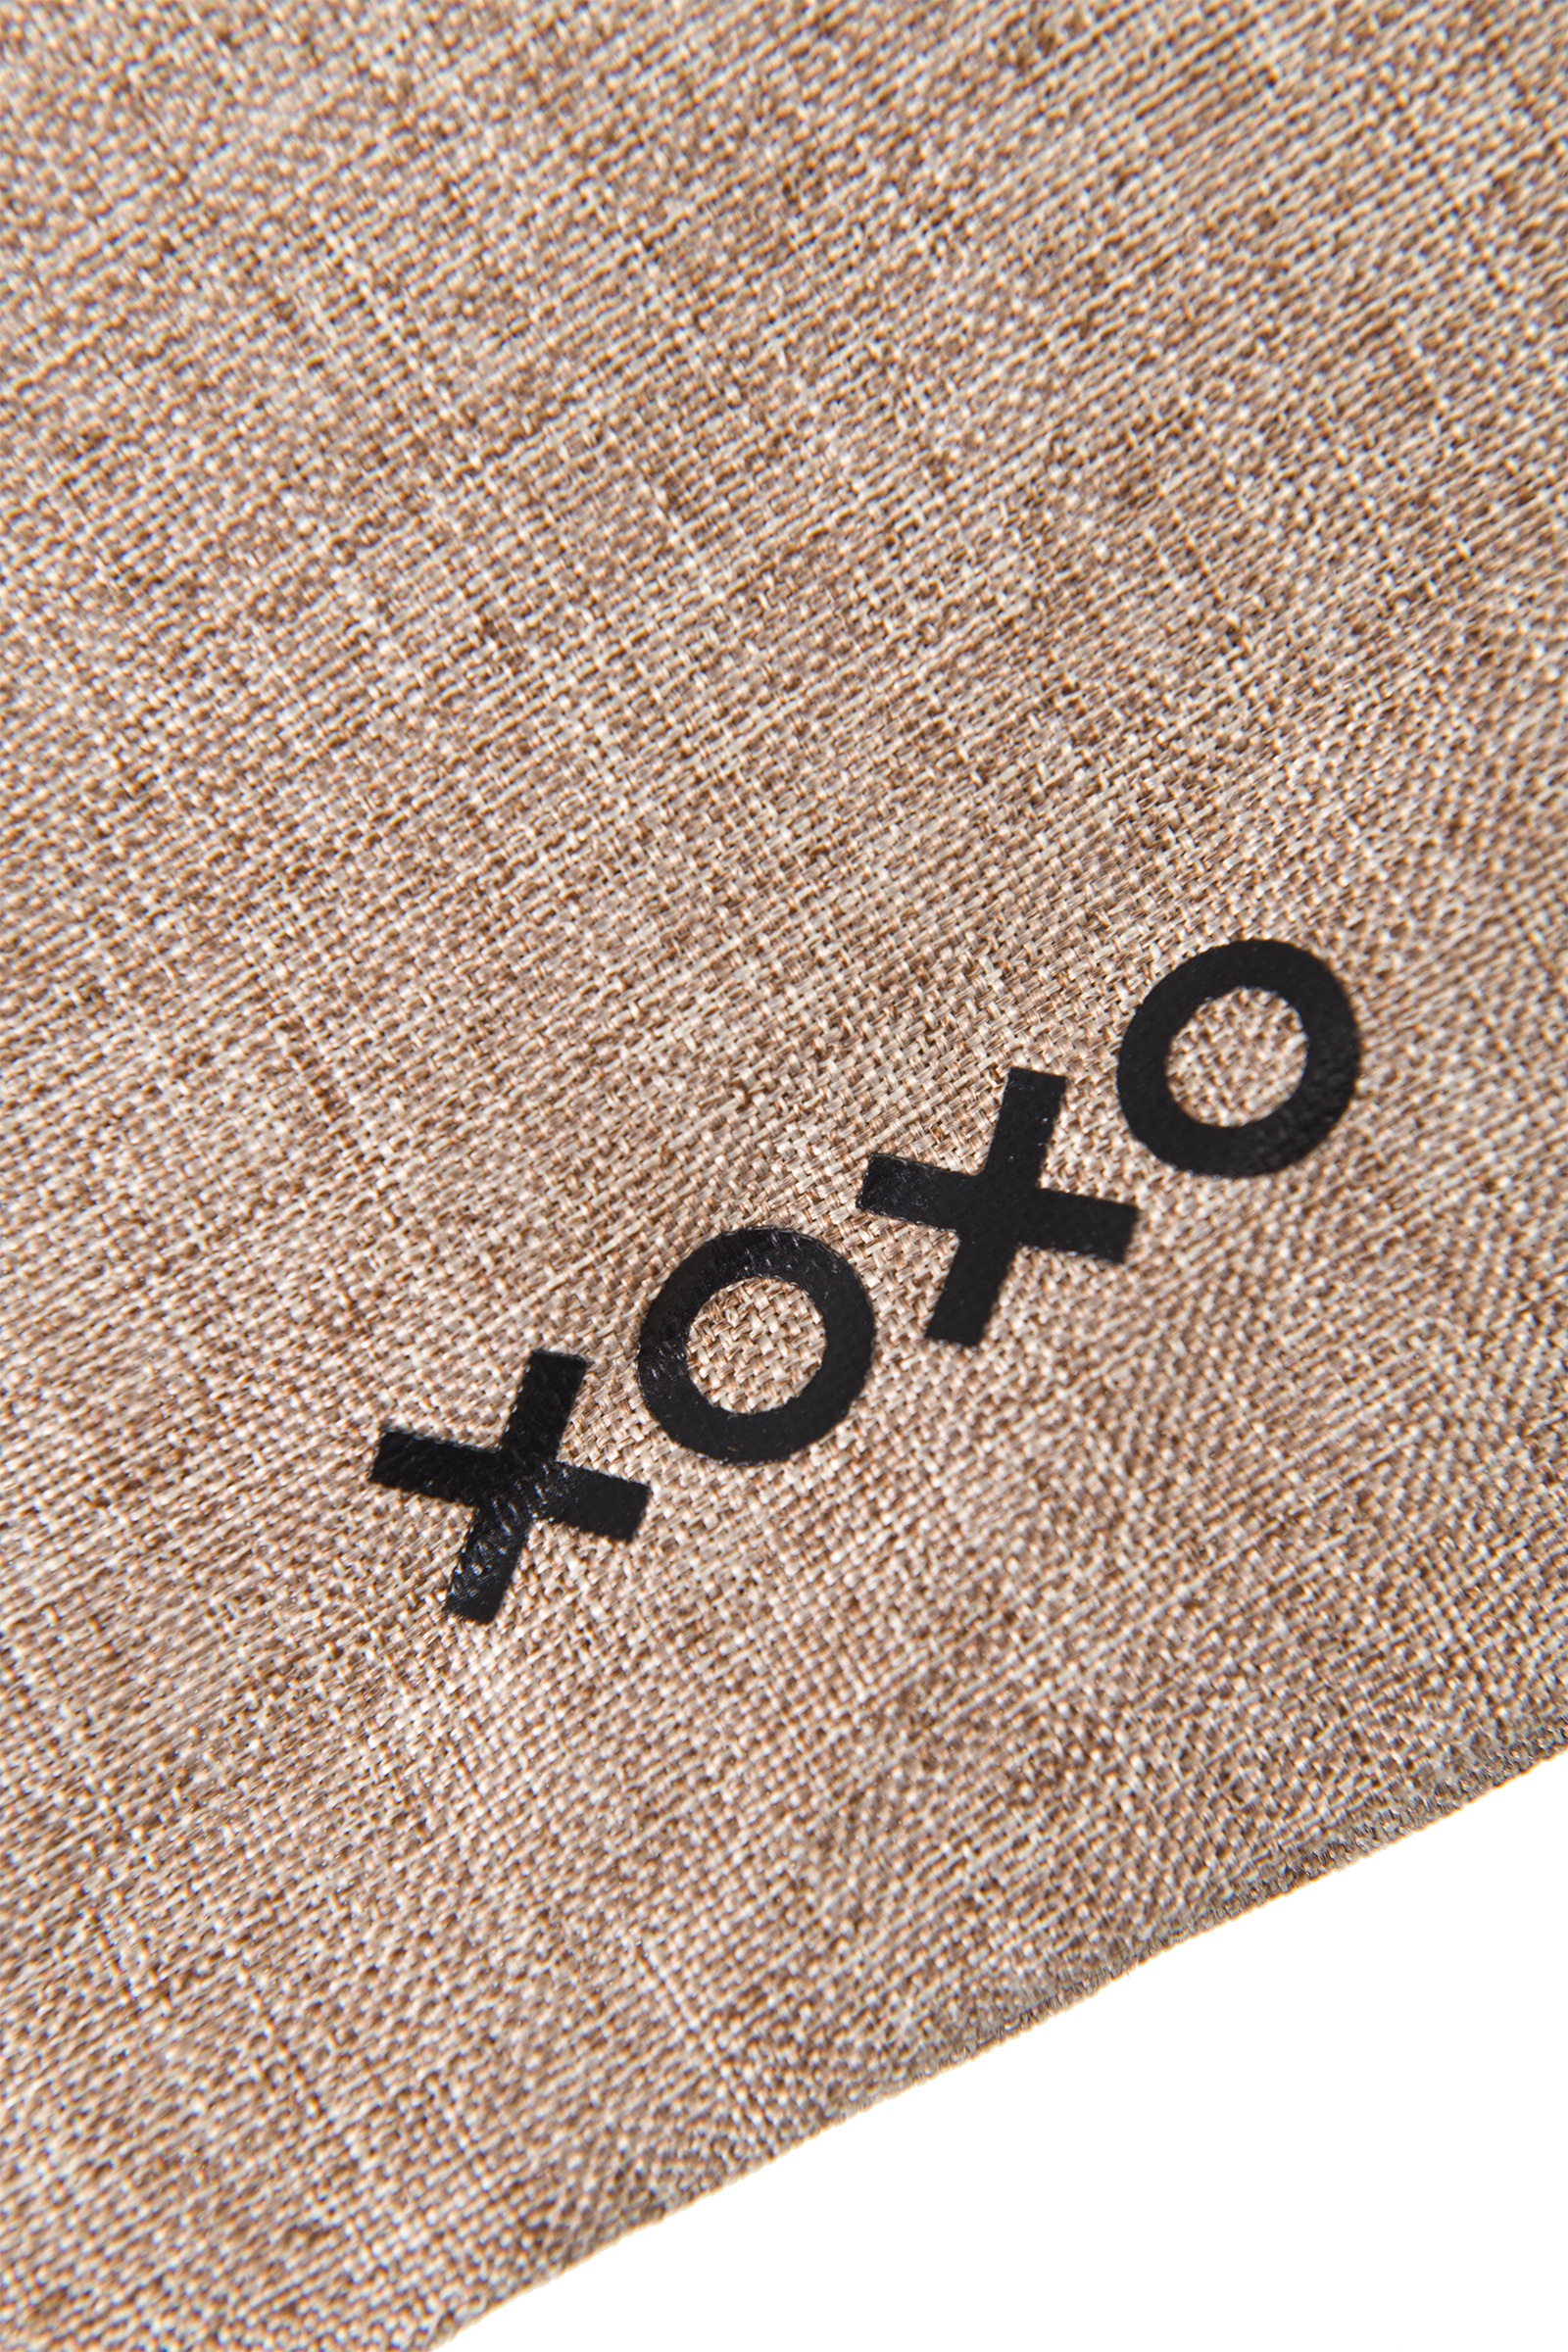 Мешочек XOXO для хранения секс-игрушек 18 см, коричневый